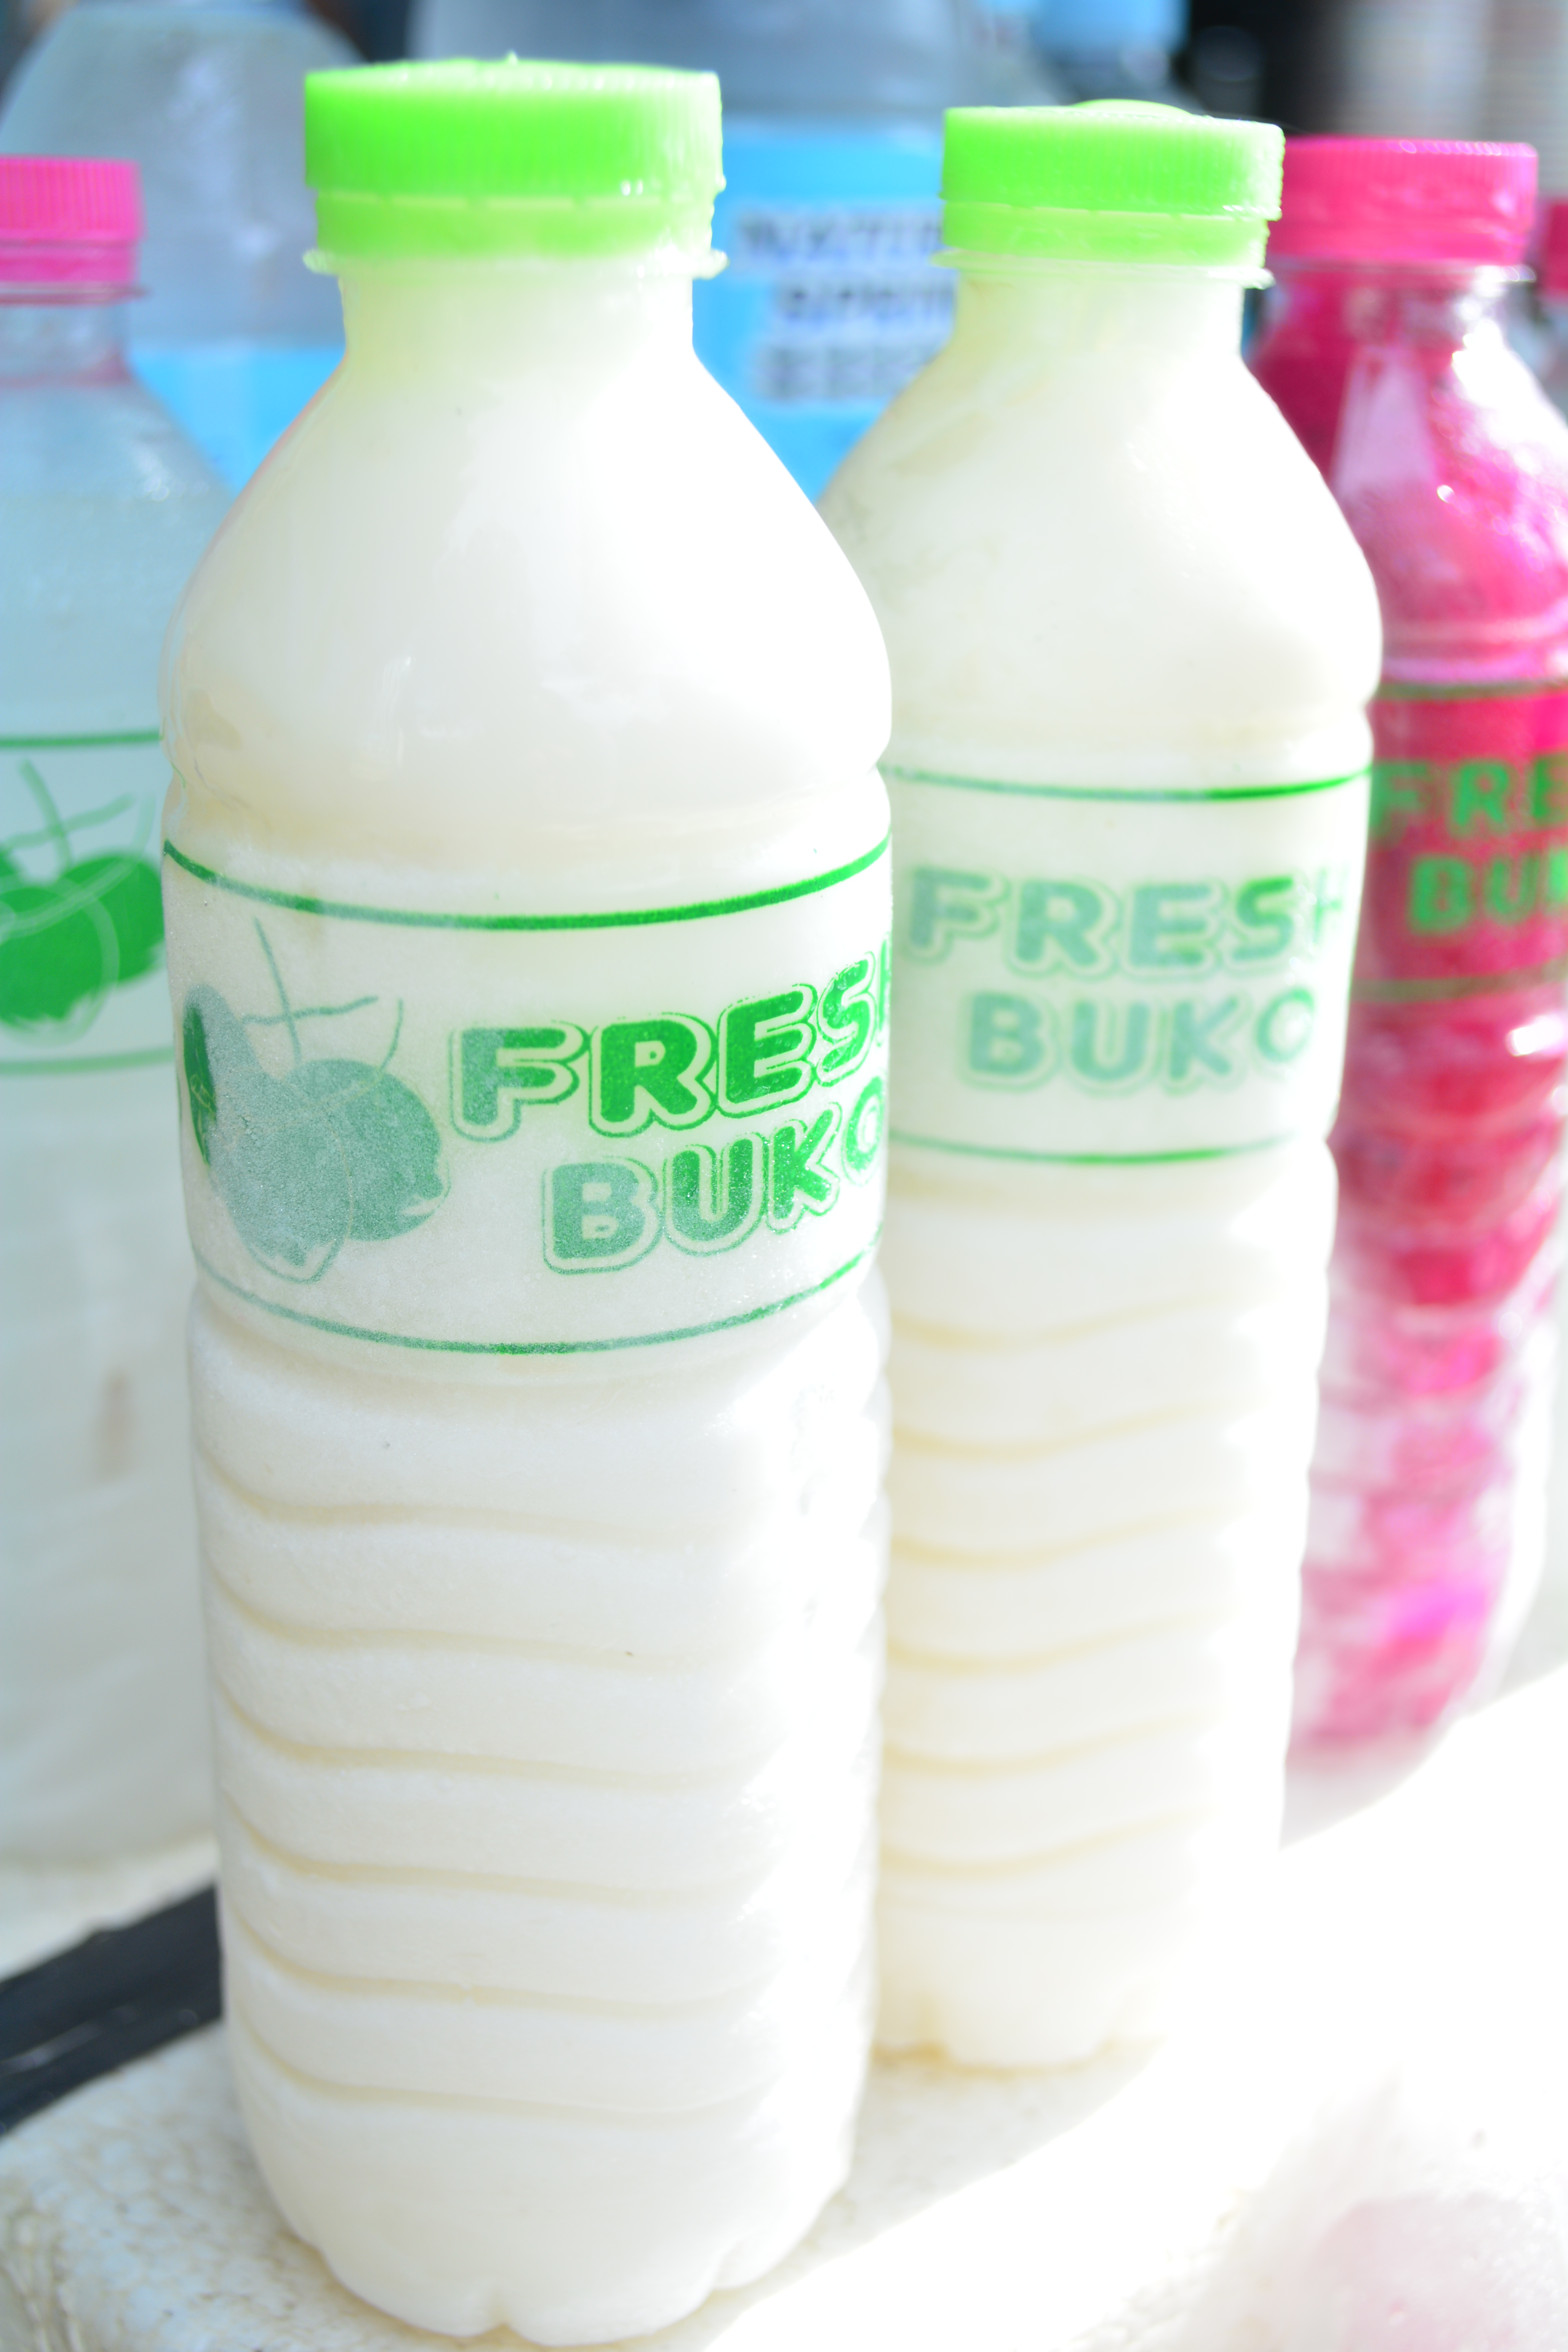 ペットボトル入りのBuko juiceは、スーパーなどで購入可能♪
キンキンに冷えたジュースをいつでも楽しめます。